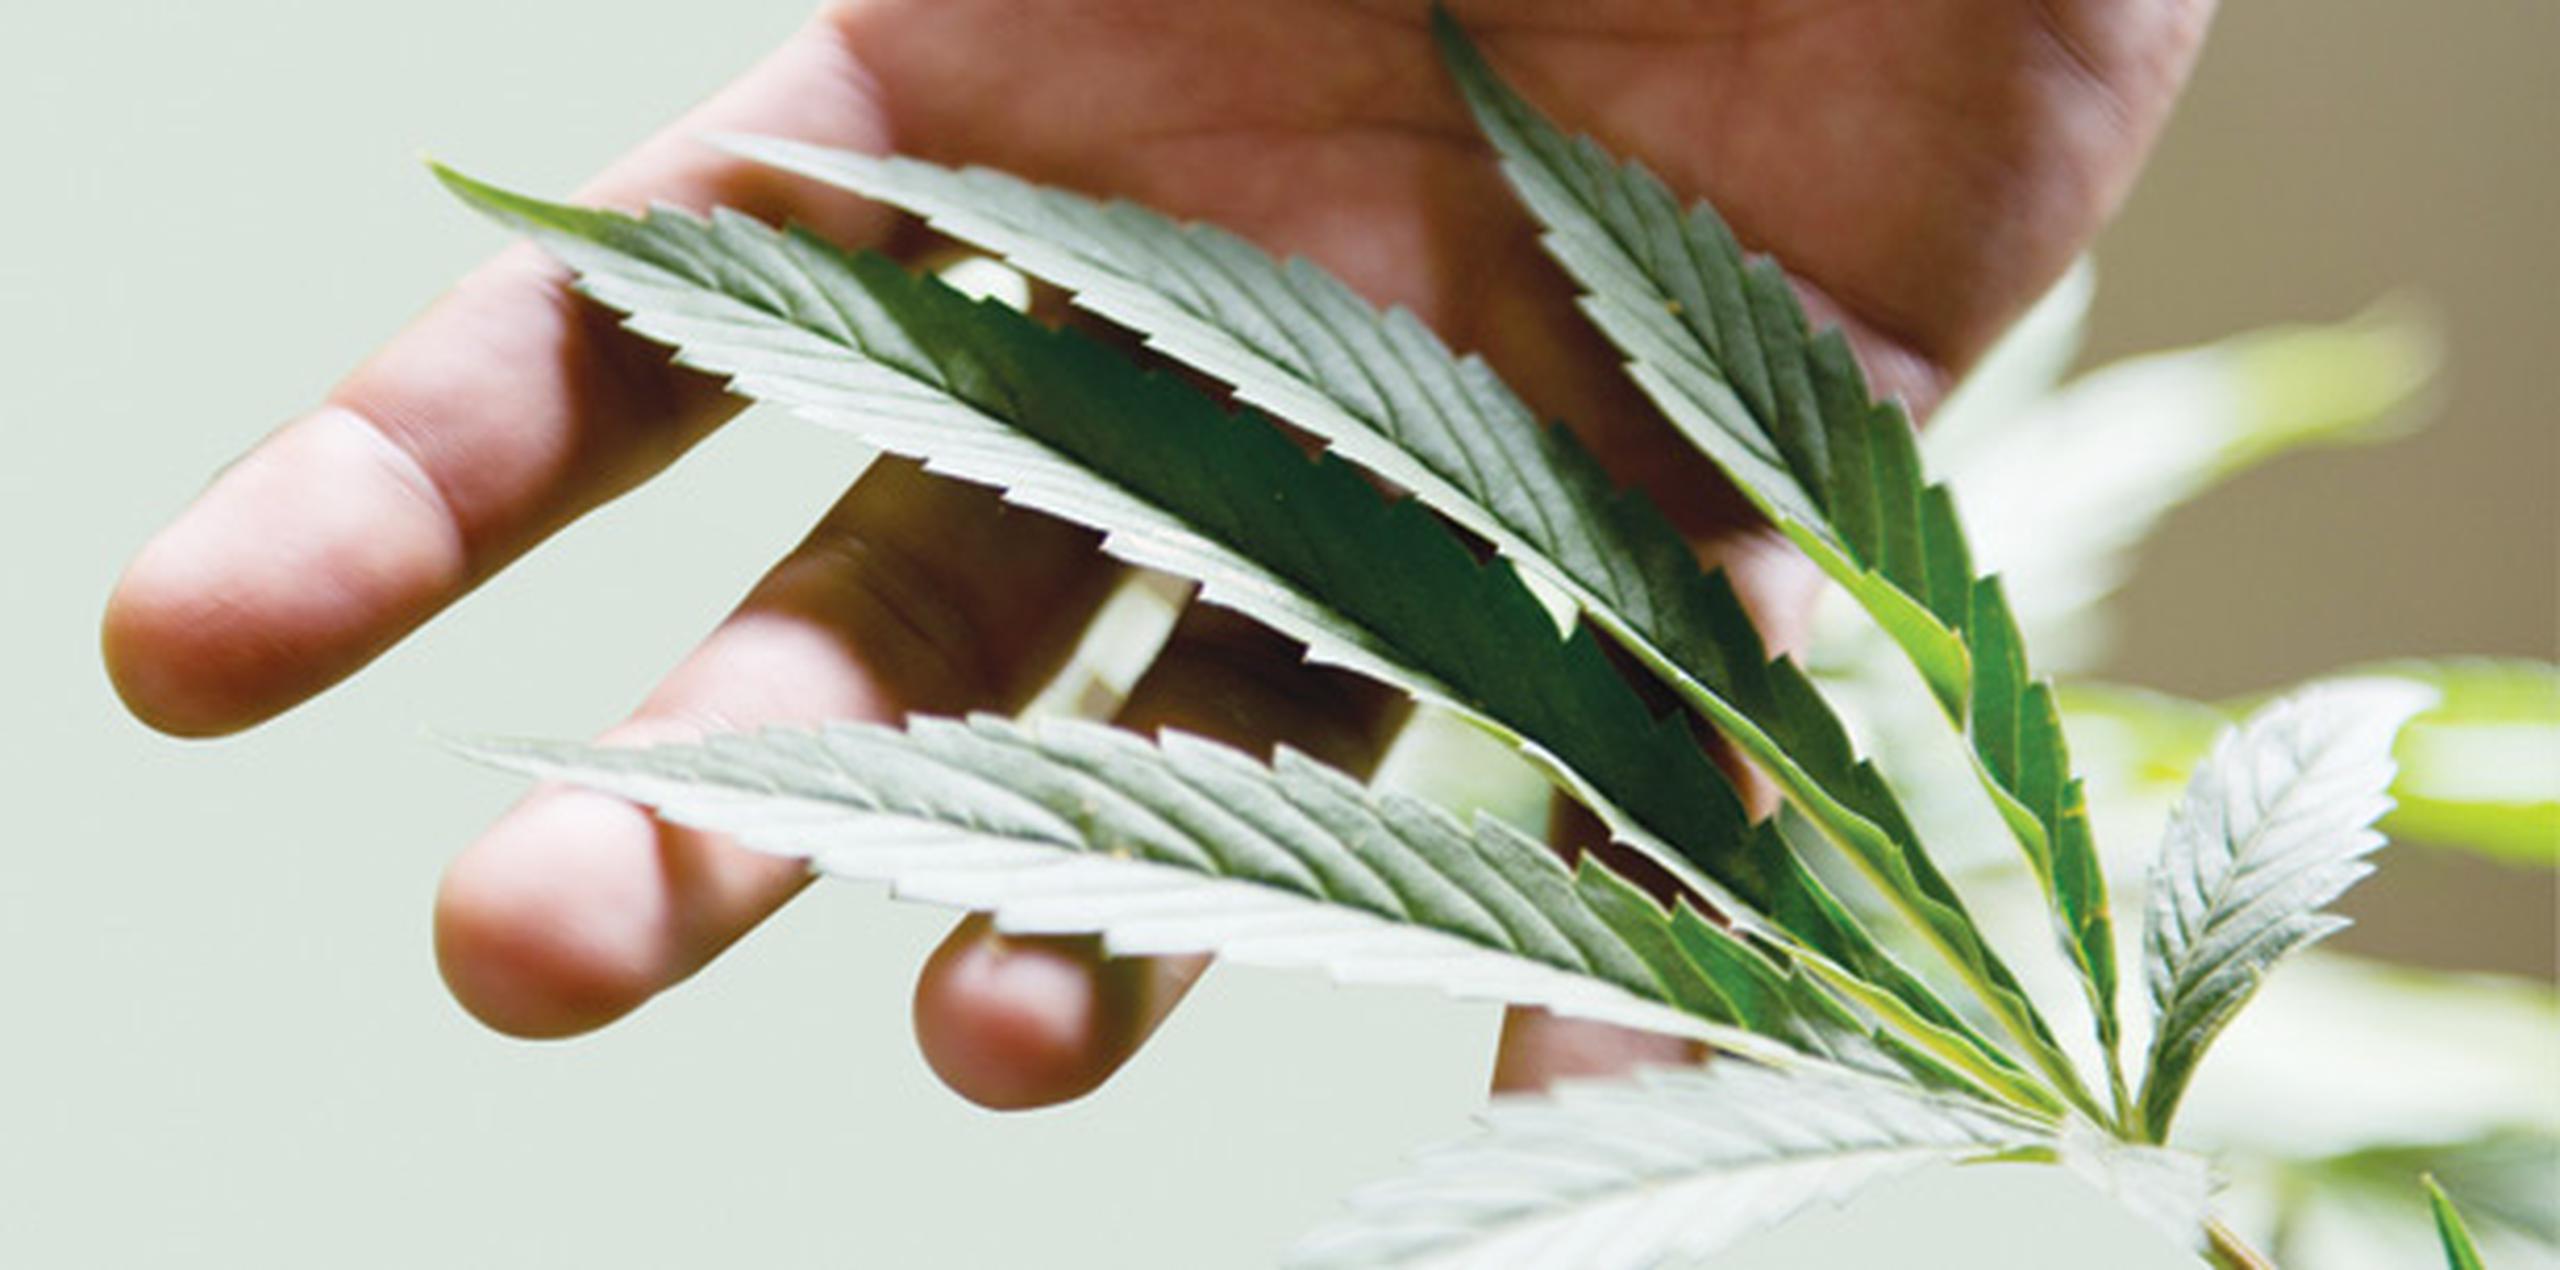 La Administración federal de Drogas y Alimentos (FDA) no reconoce el cannabis medicinal como un medicamento. (Archivo)